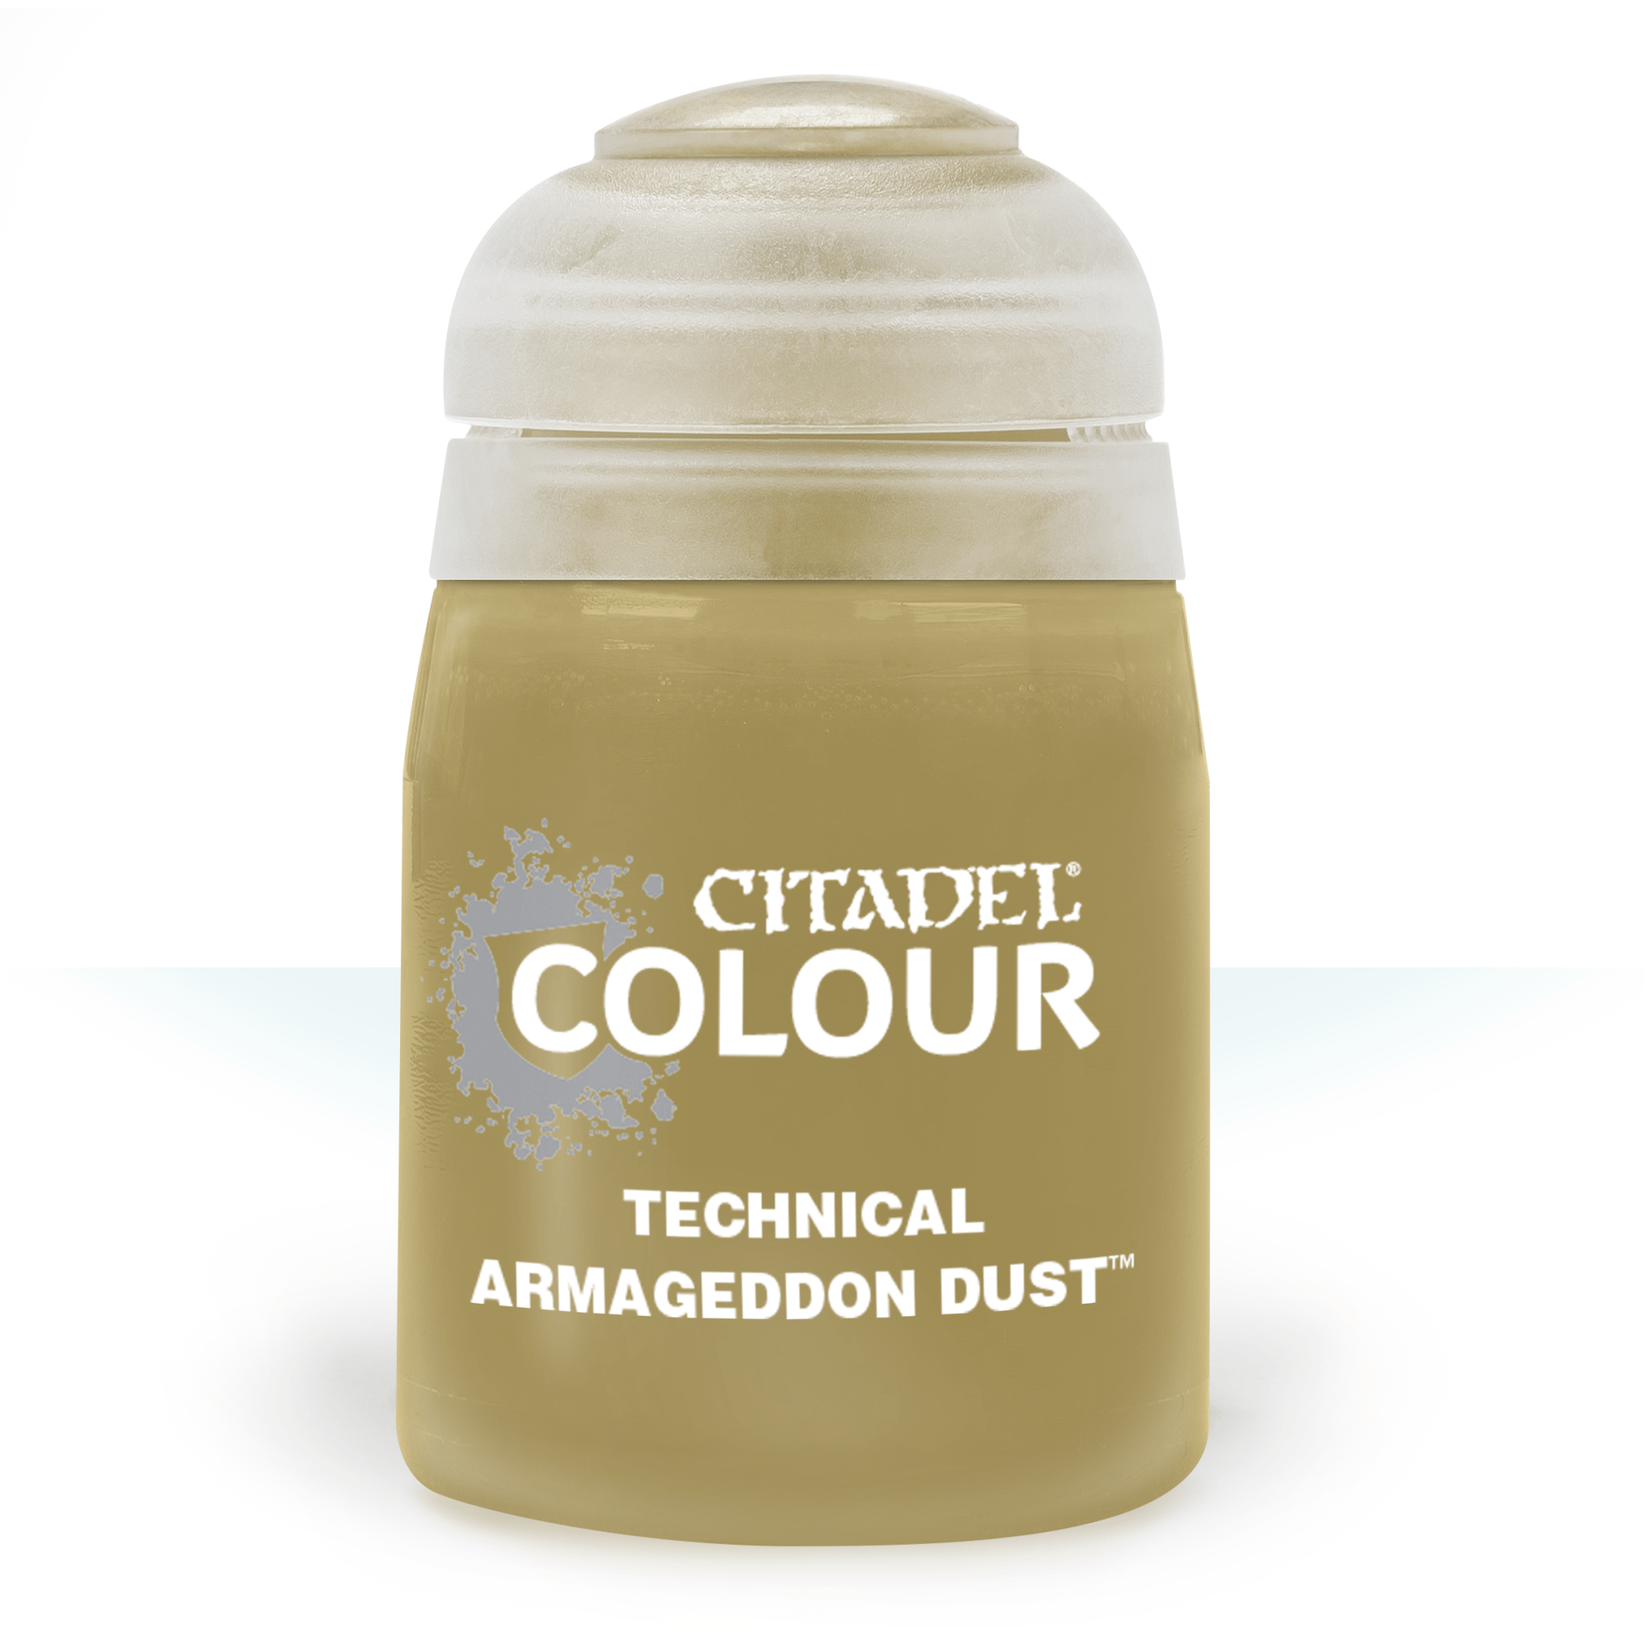 Games Workshop Citadel Colour Paint Technical Armageddon Dust